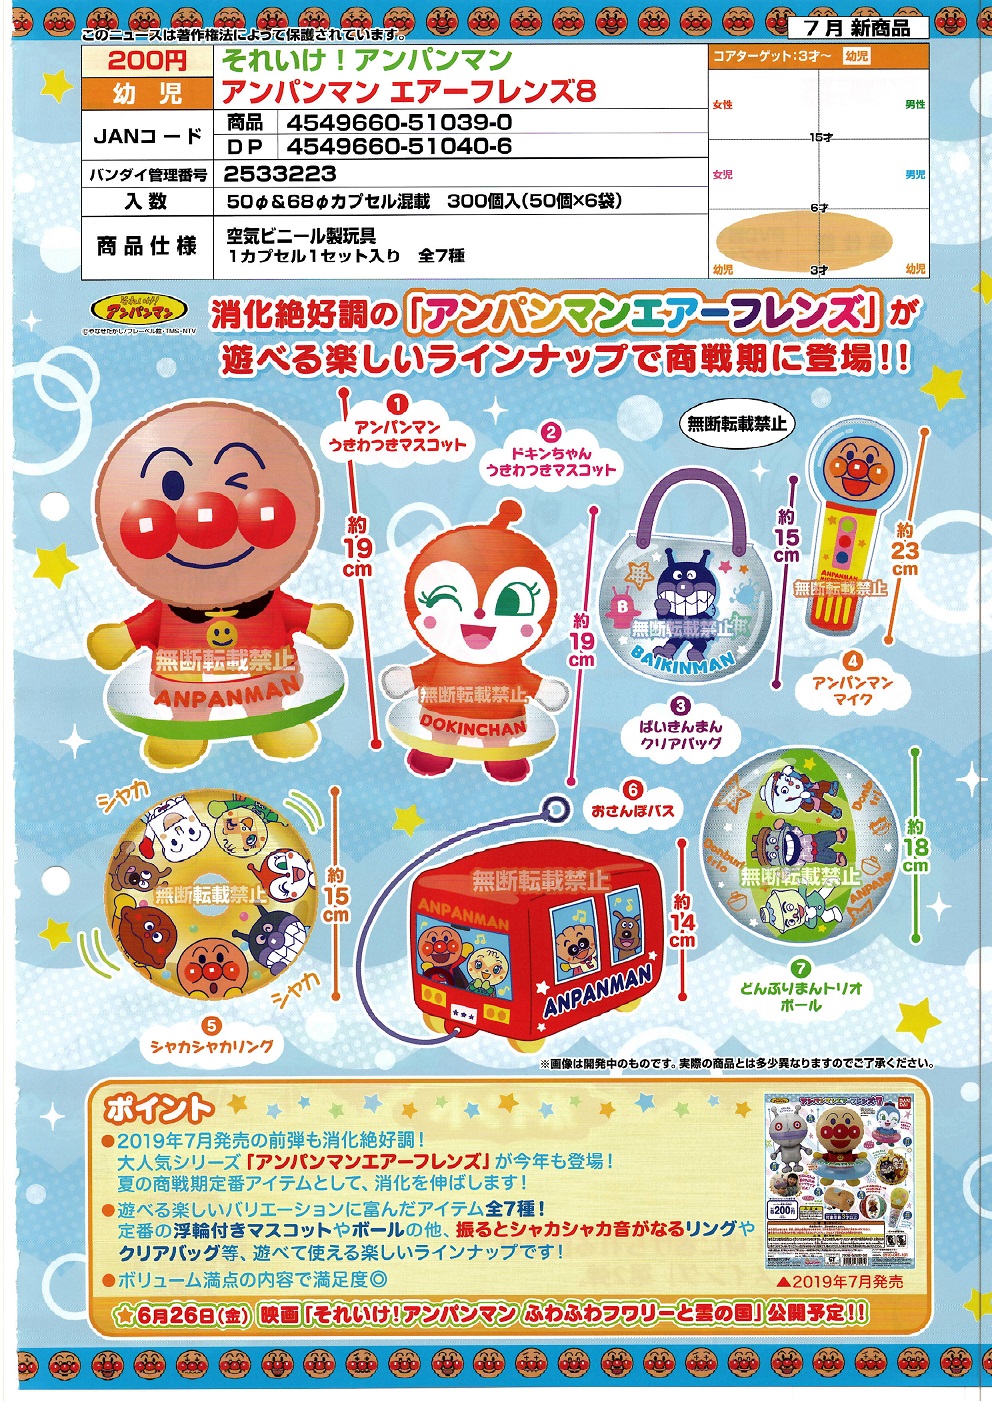 【A】200日元扭蛋 面包超人 空气玩具 第8弹 全7种 (1袋50个)  510390